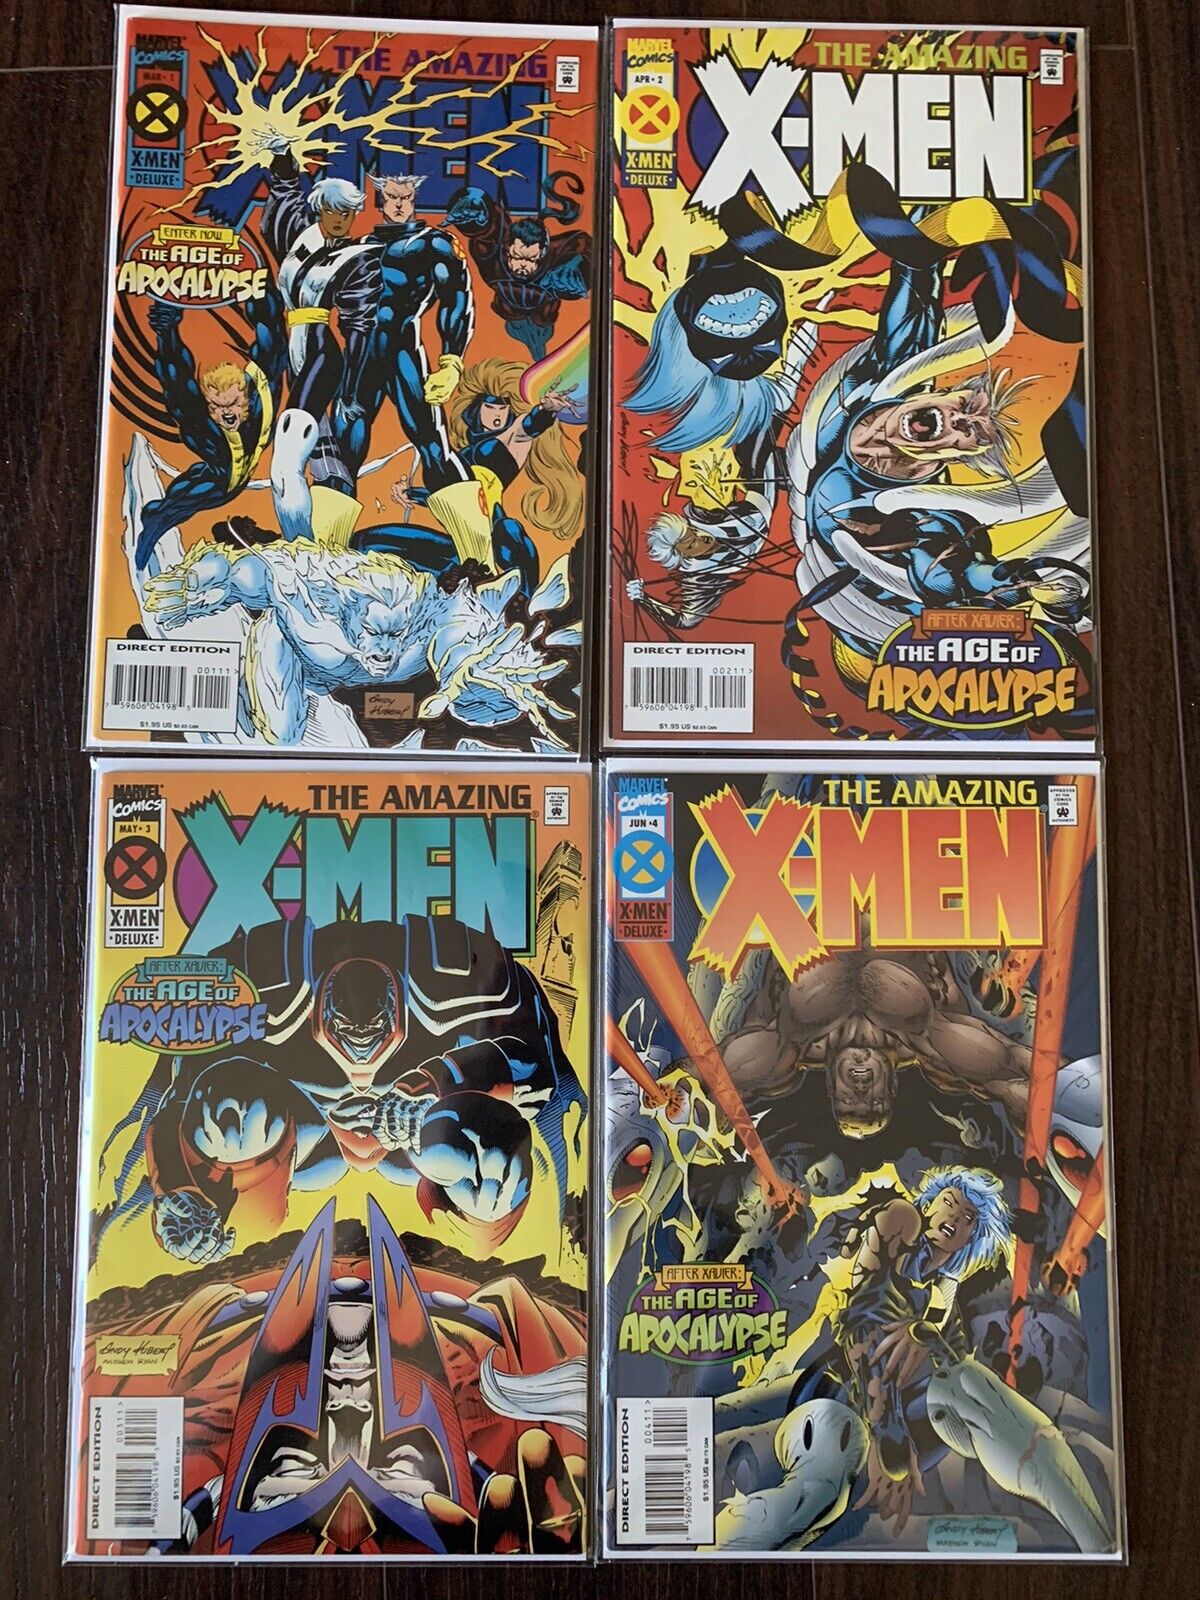 Marvel The Amazing X-Men #1-4 Complete Set The Age of Apocalypse